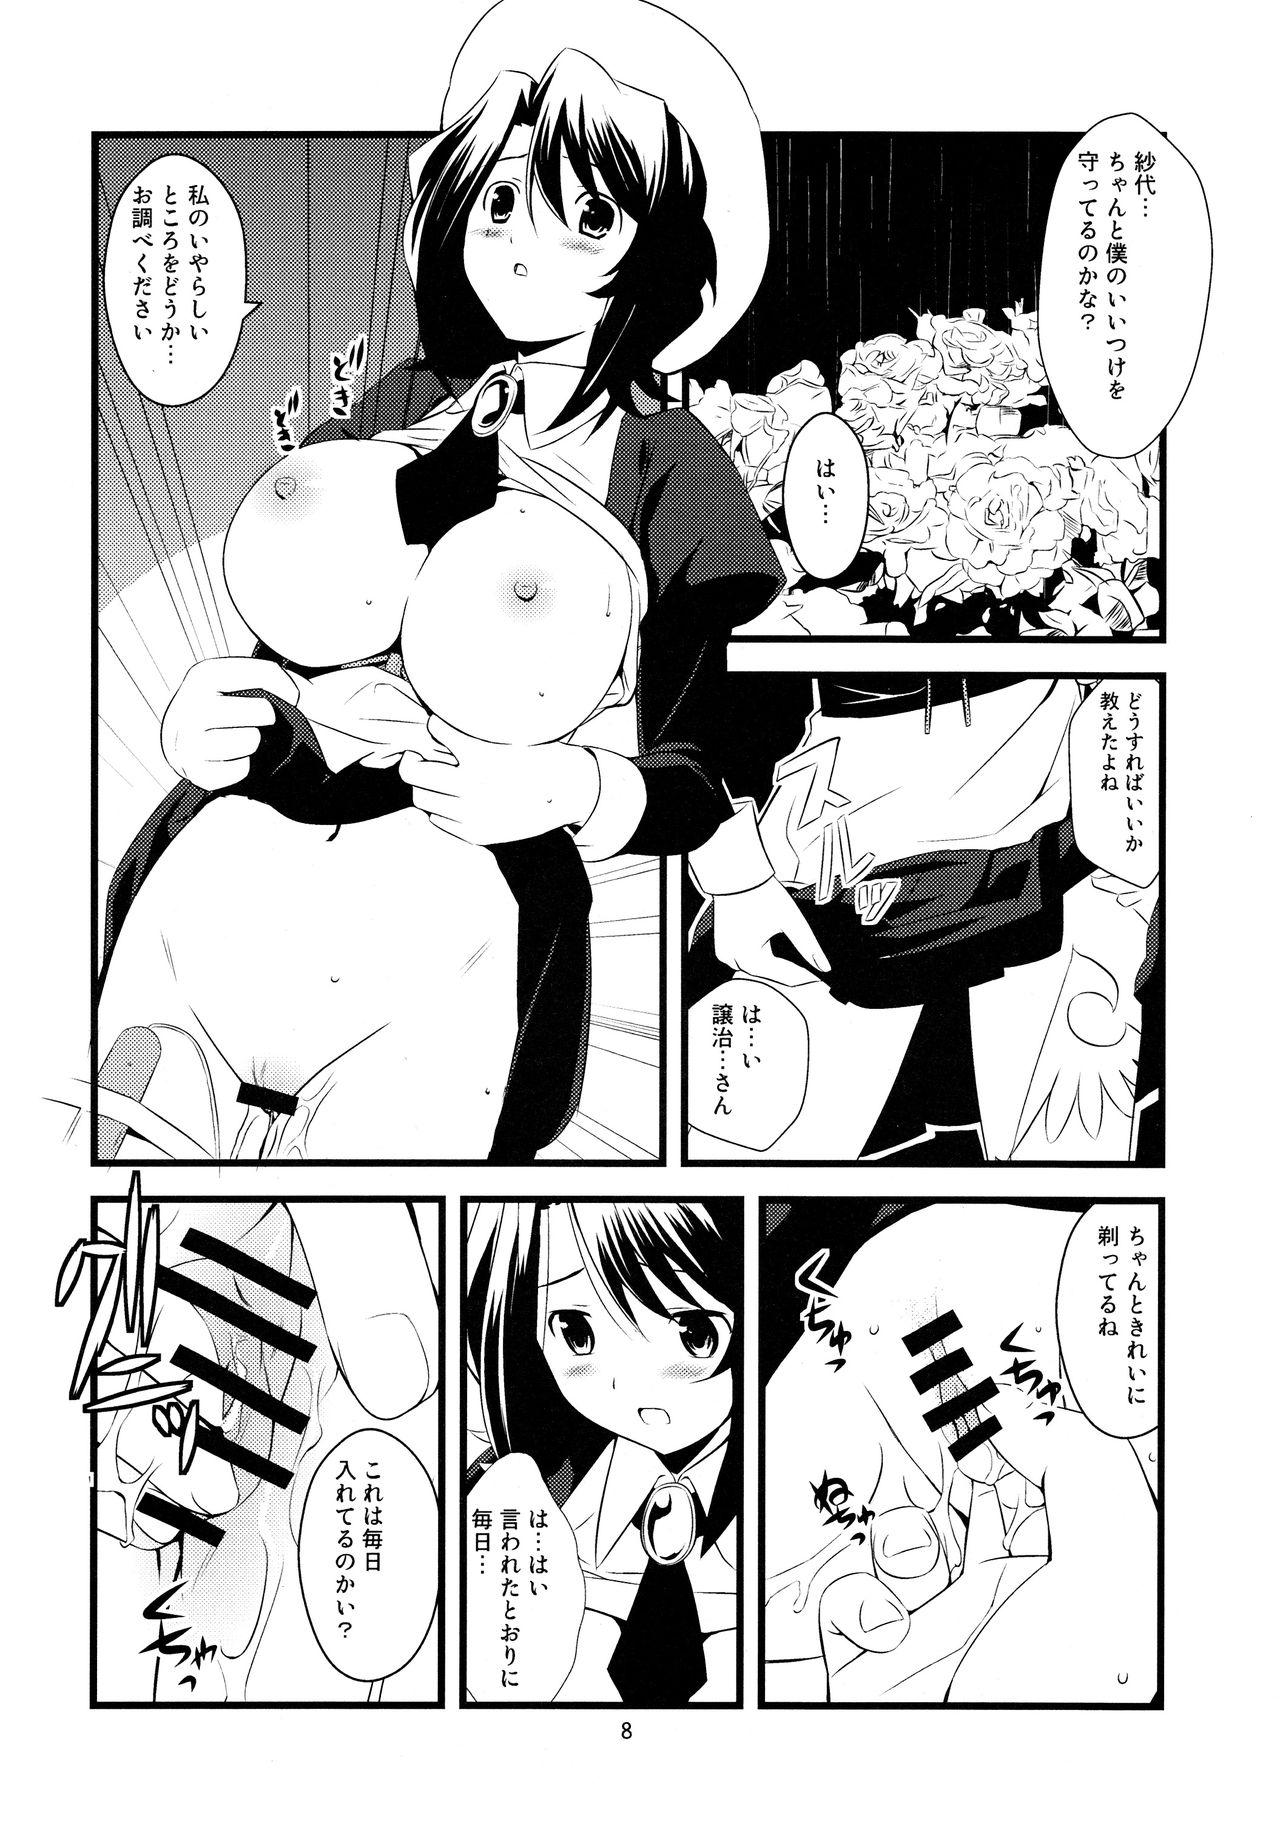 Putas Super Size! Milky Maiden - Higurashi no naku koro ni Umineko no naku koro ni Oral - Page 9